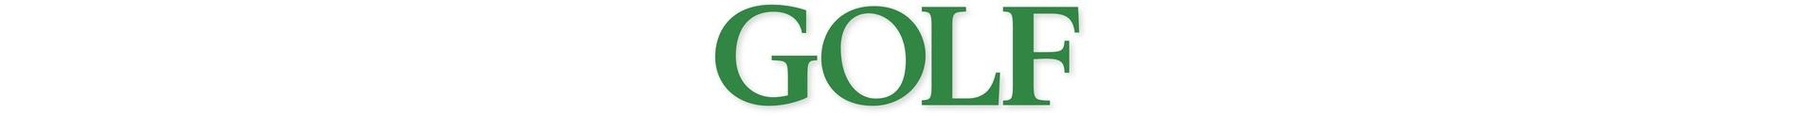 GOLF Magazine logo.modjpg